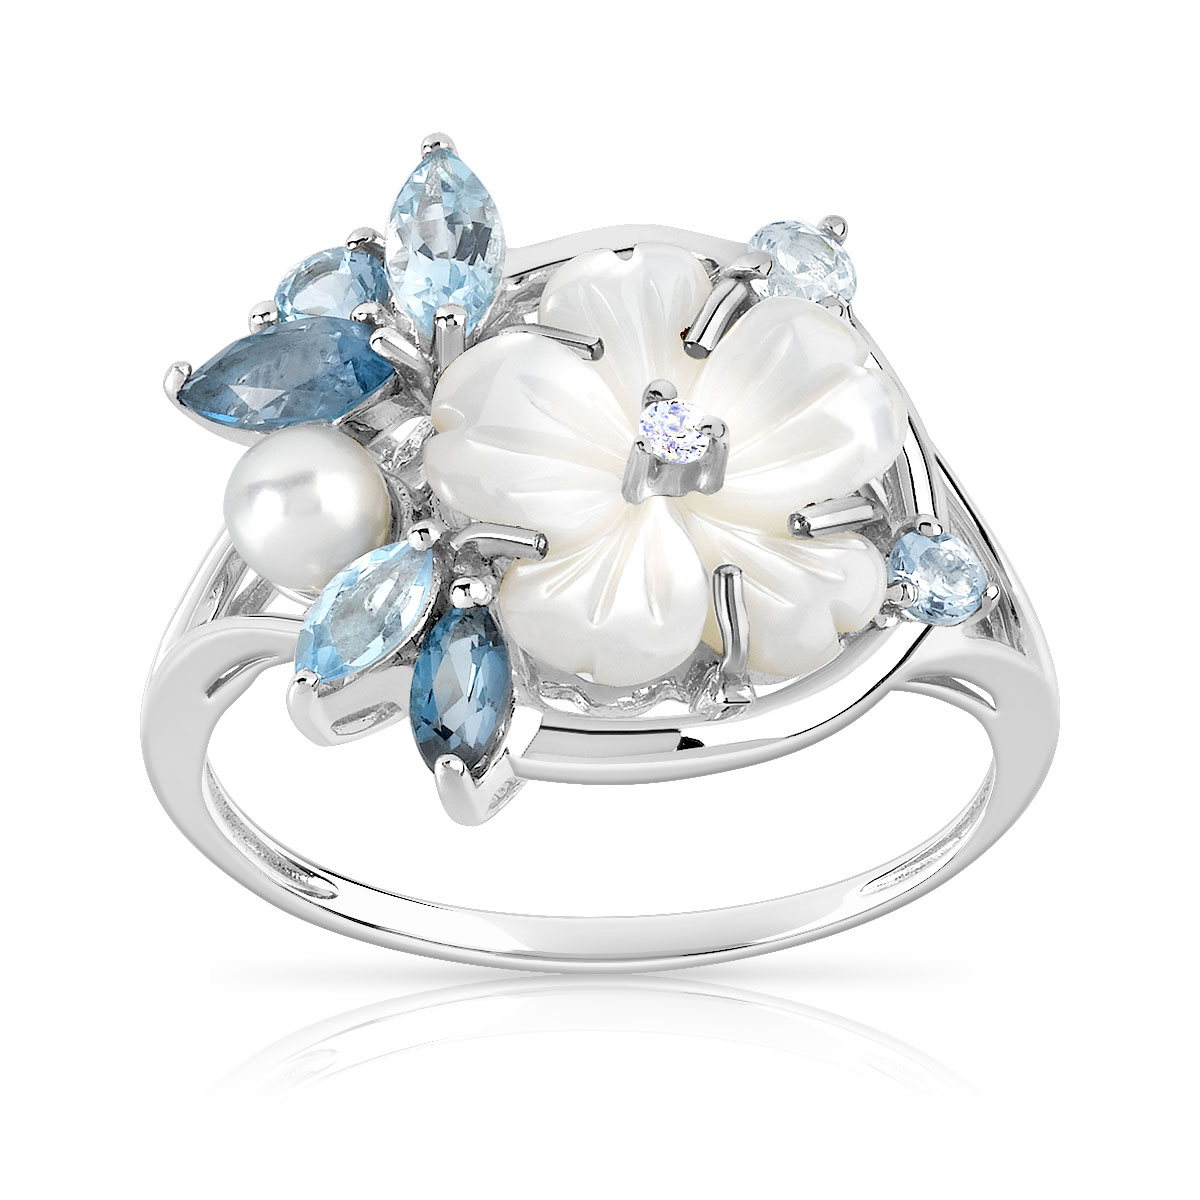 Bague or 375 blanc fleur pierres fines, nacre et perle de culture de Chine